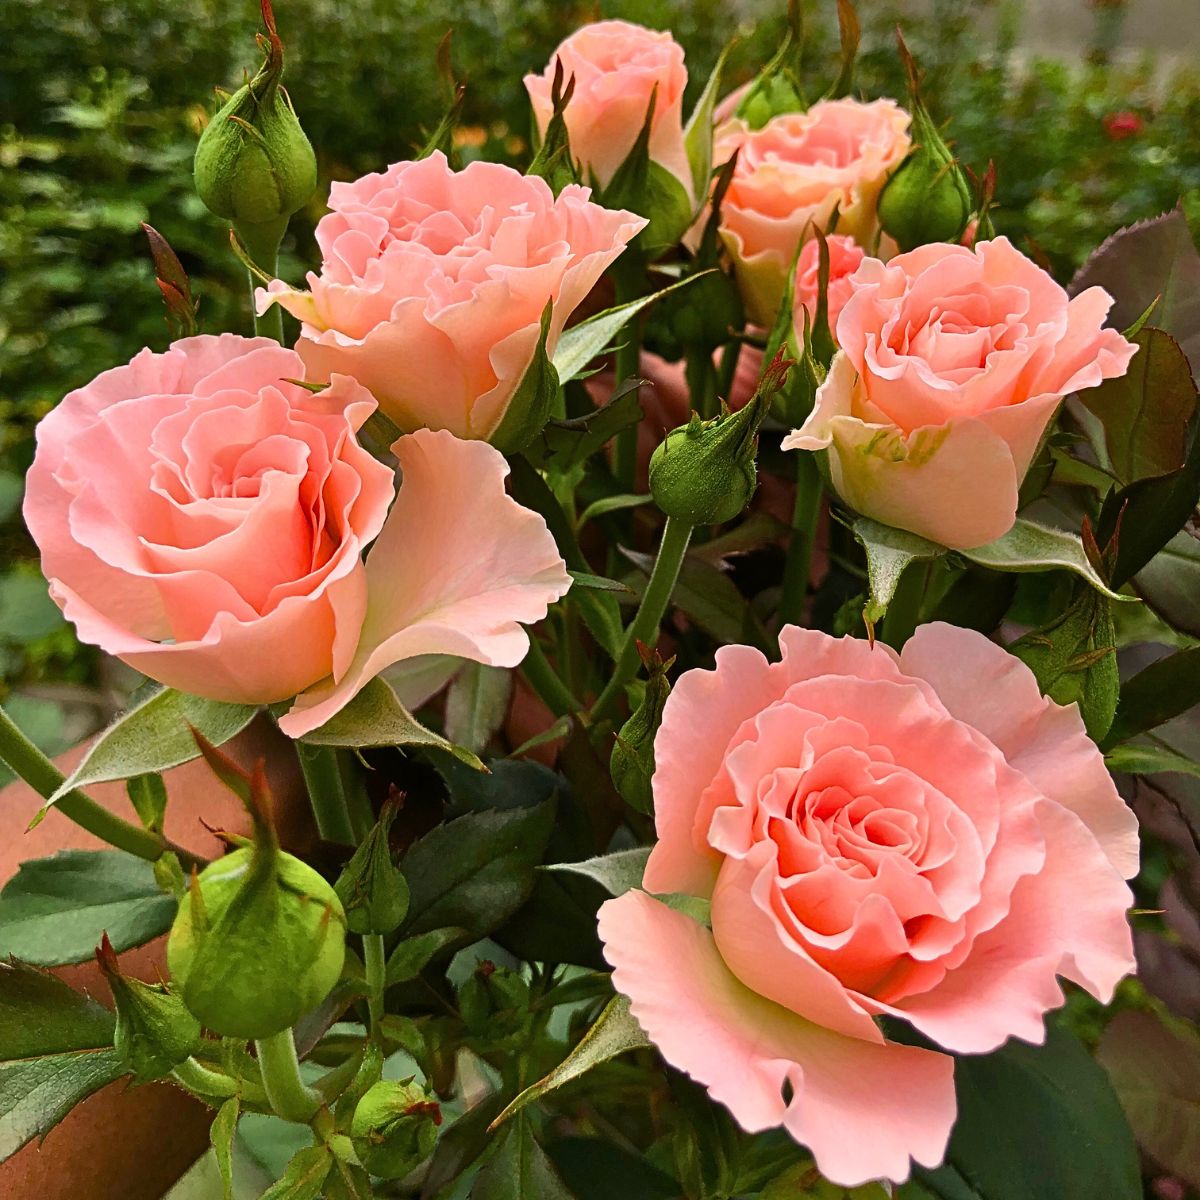 De Ruiter’s New Rose Varieties at IFTEX